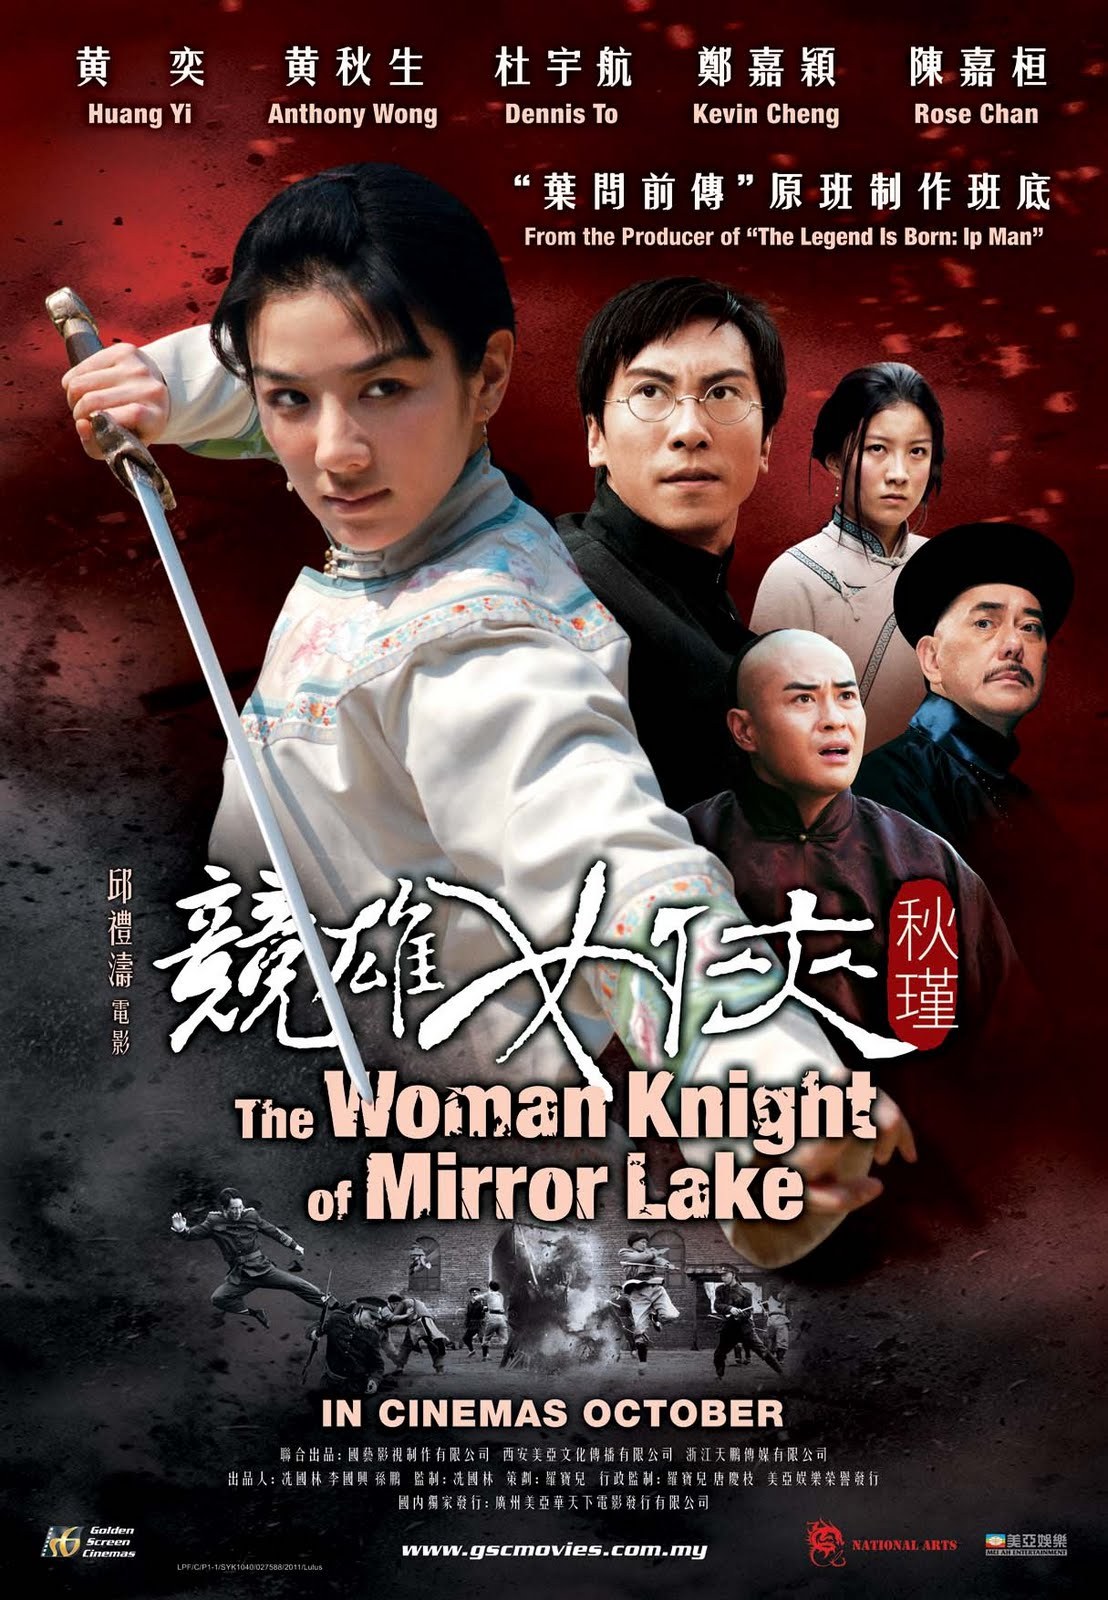 ดูหนังออนไลน์ฟรี The Woman Knight of Mirror Lake (2011) ซิวจิน วีรสตรีพลิกชาติ